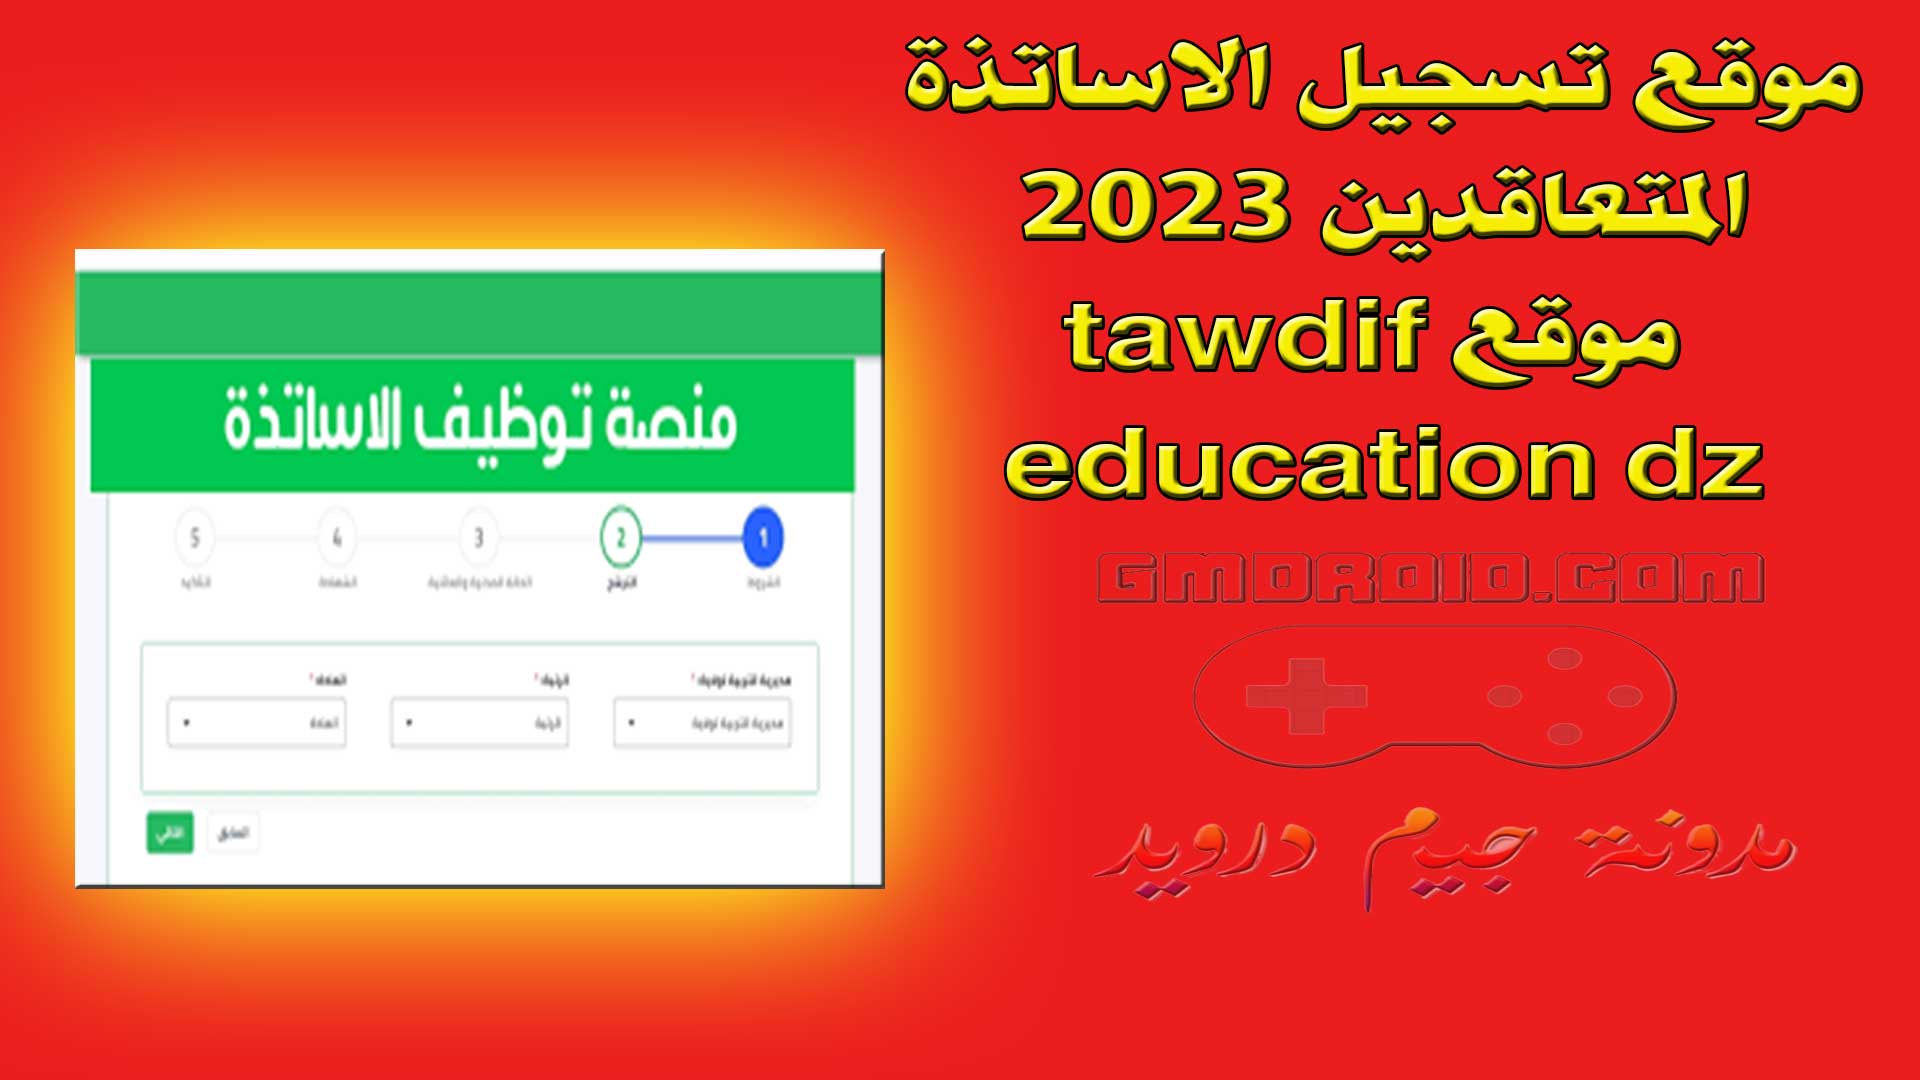 موقع تسجيل الاساتذة المتعاقدين 2023 - موقع tawdif education dz